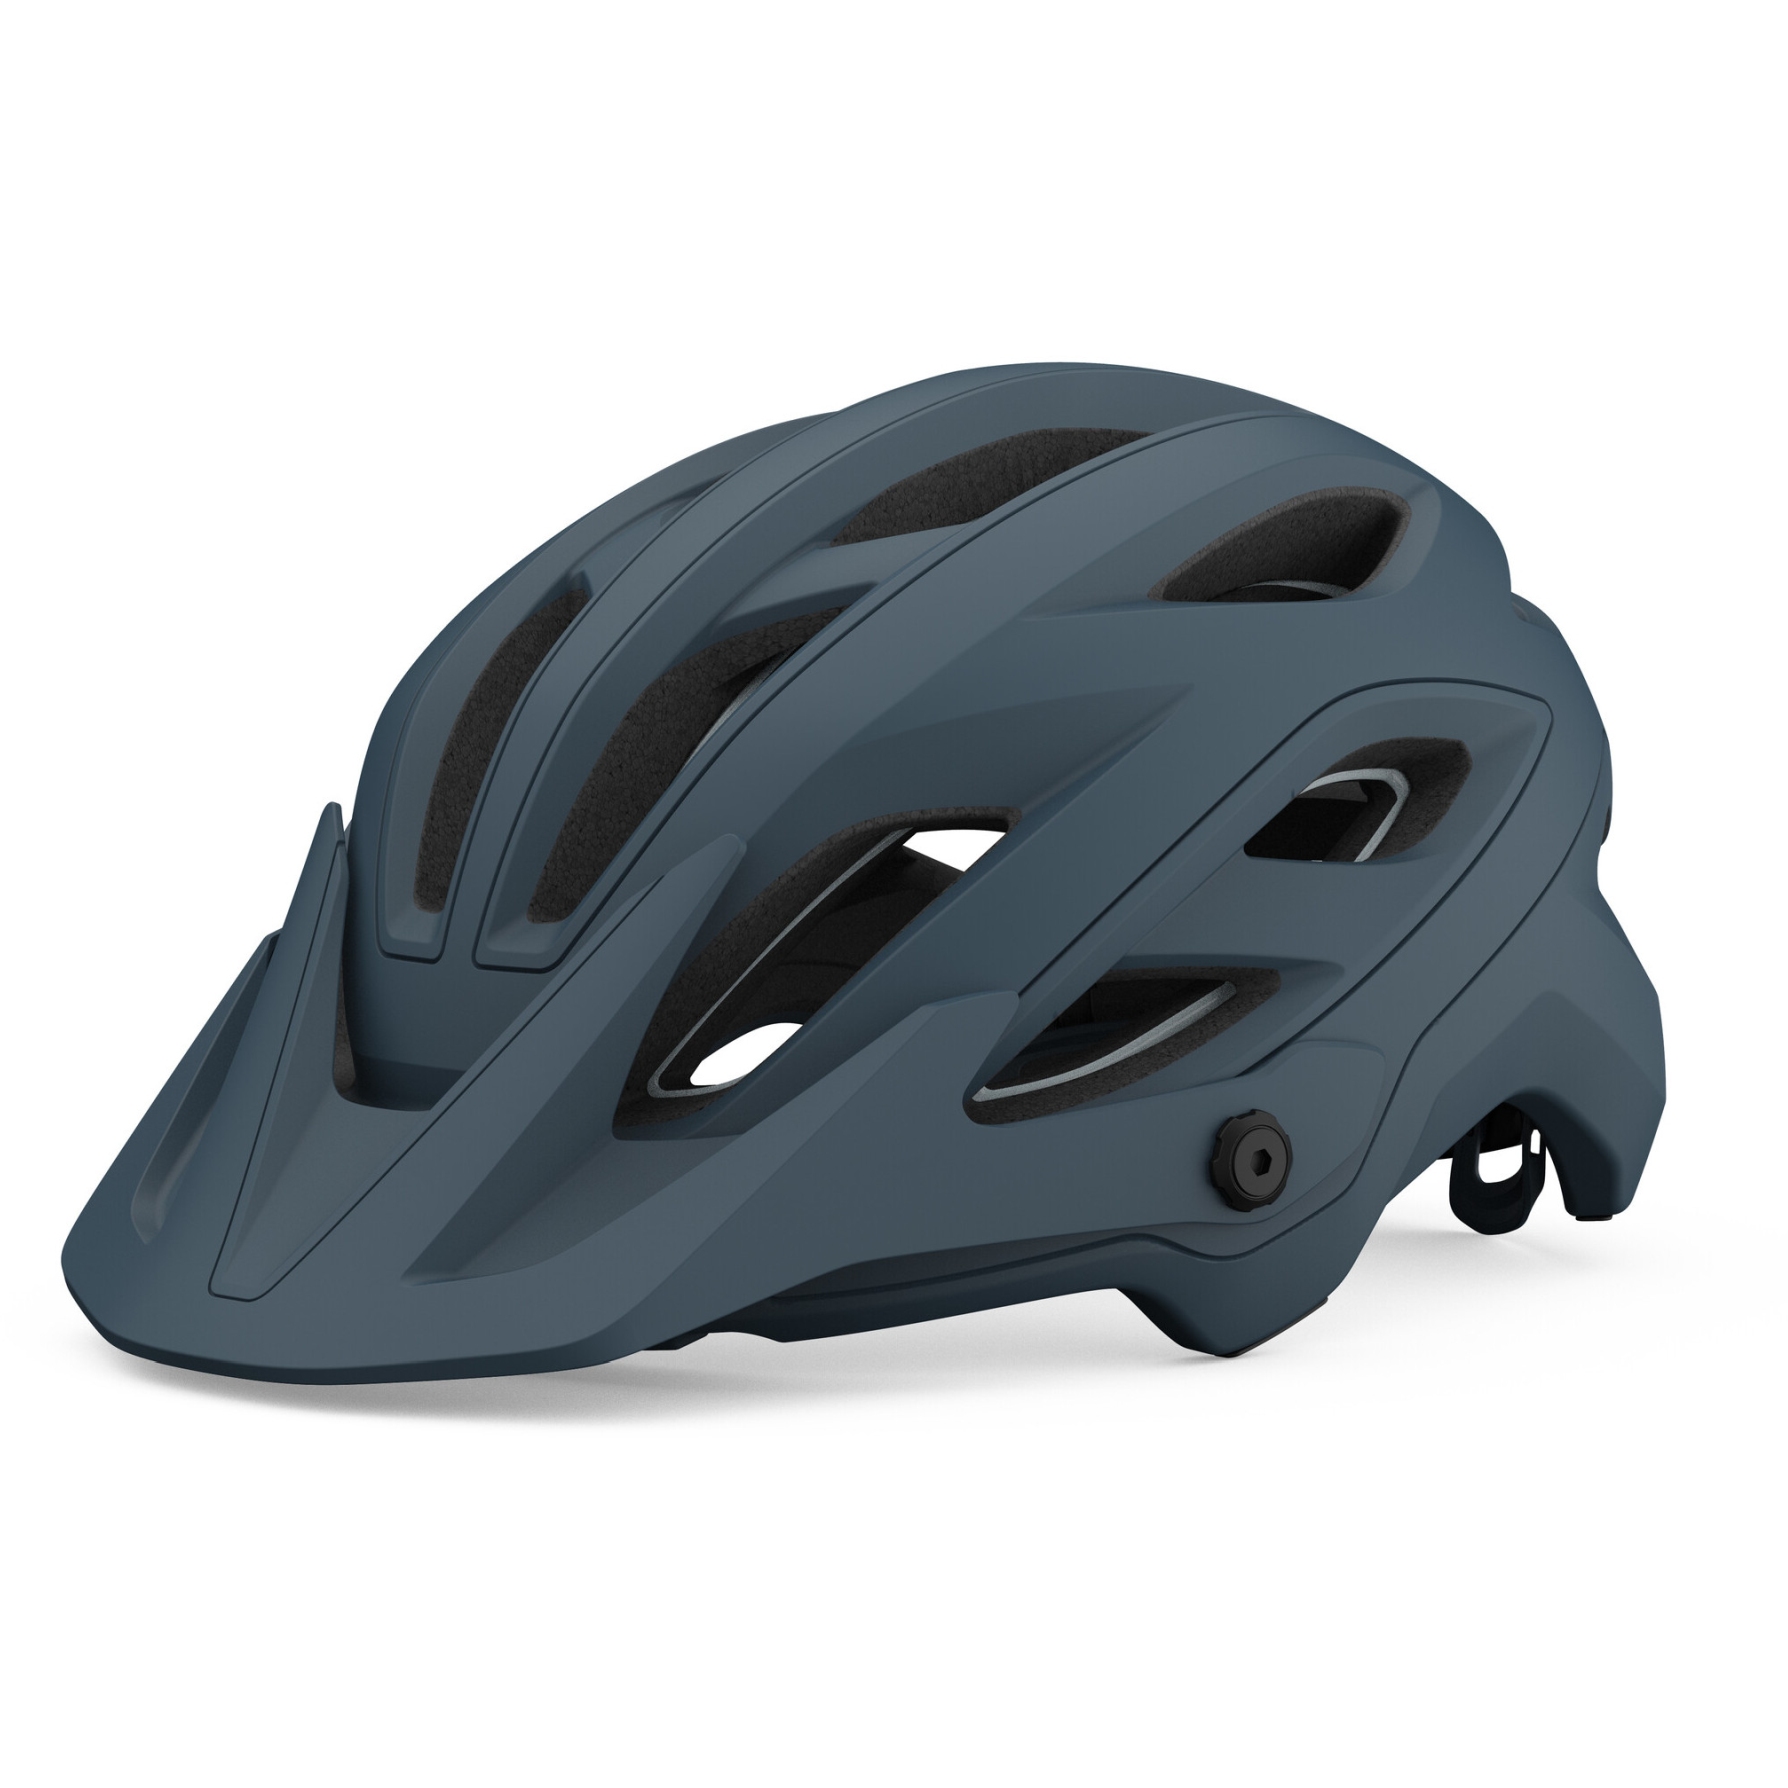 Produktbild von Giro Merit Spherical MTB Helm - matte portaro grey